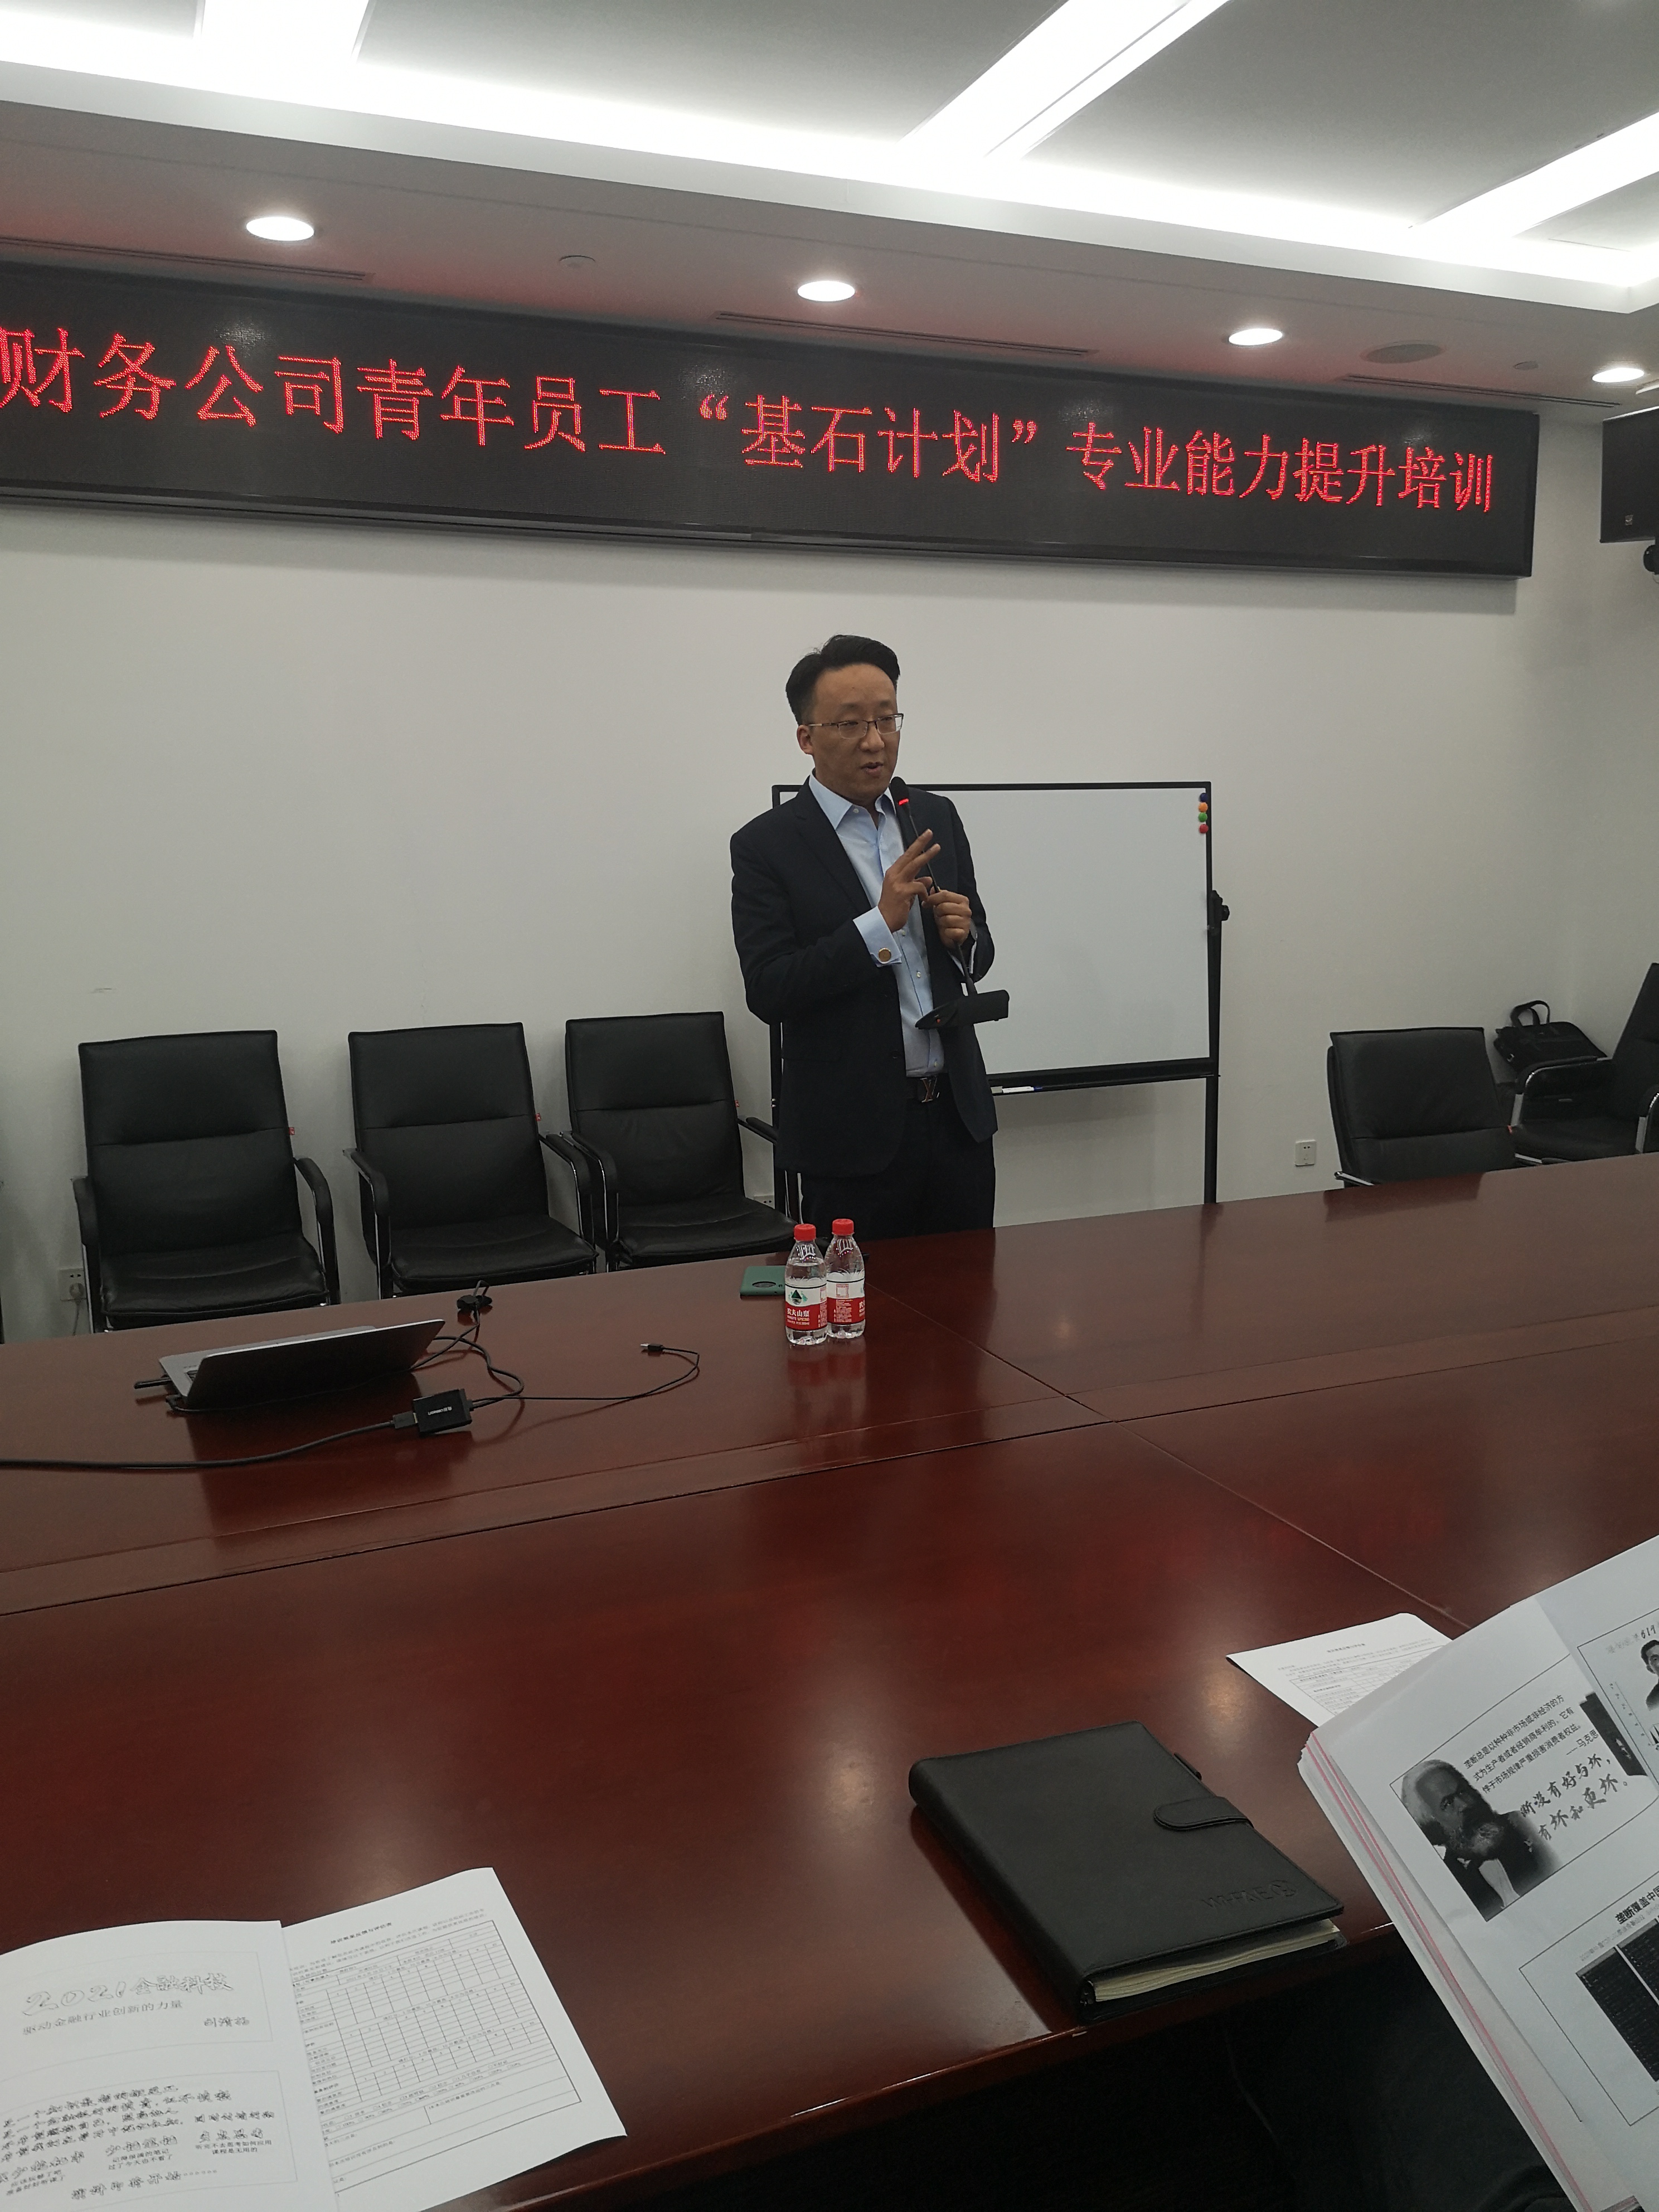 2021.6.16刘清扬老师为中国能源建设集团讲授《金融科技-驱动金融行业创新的力量》圆满结束~